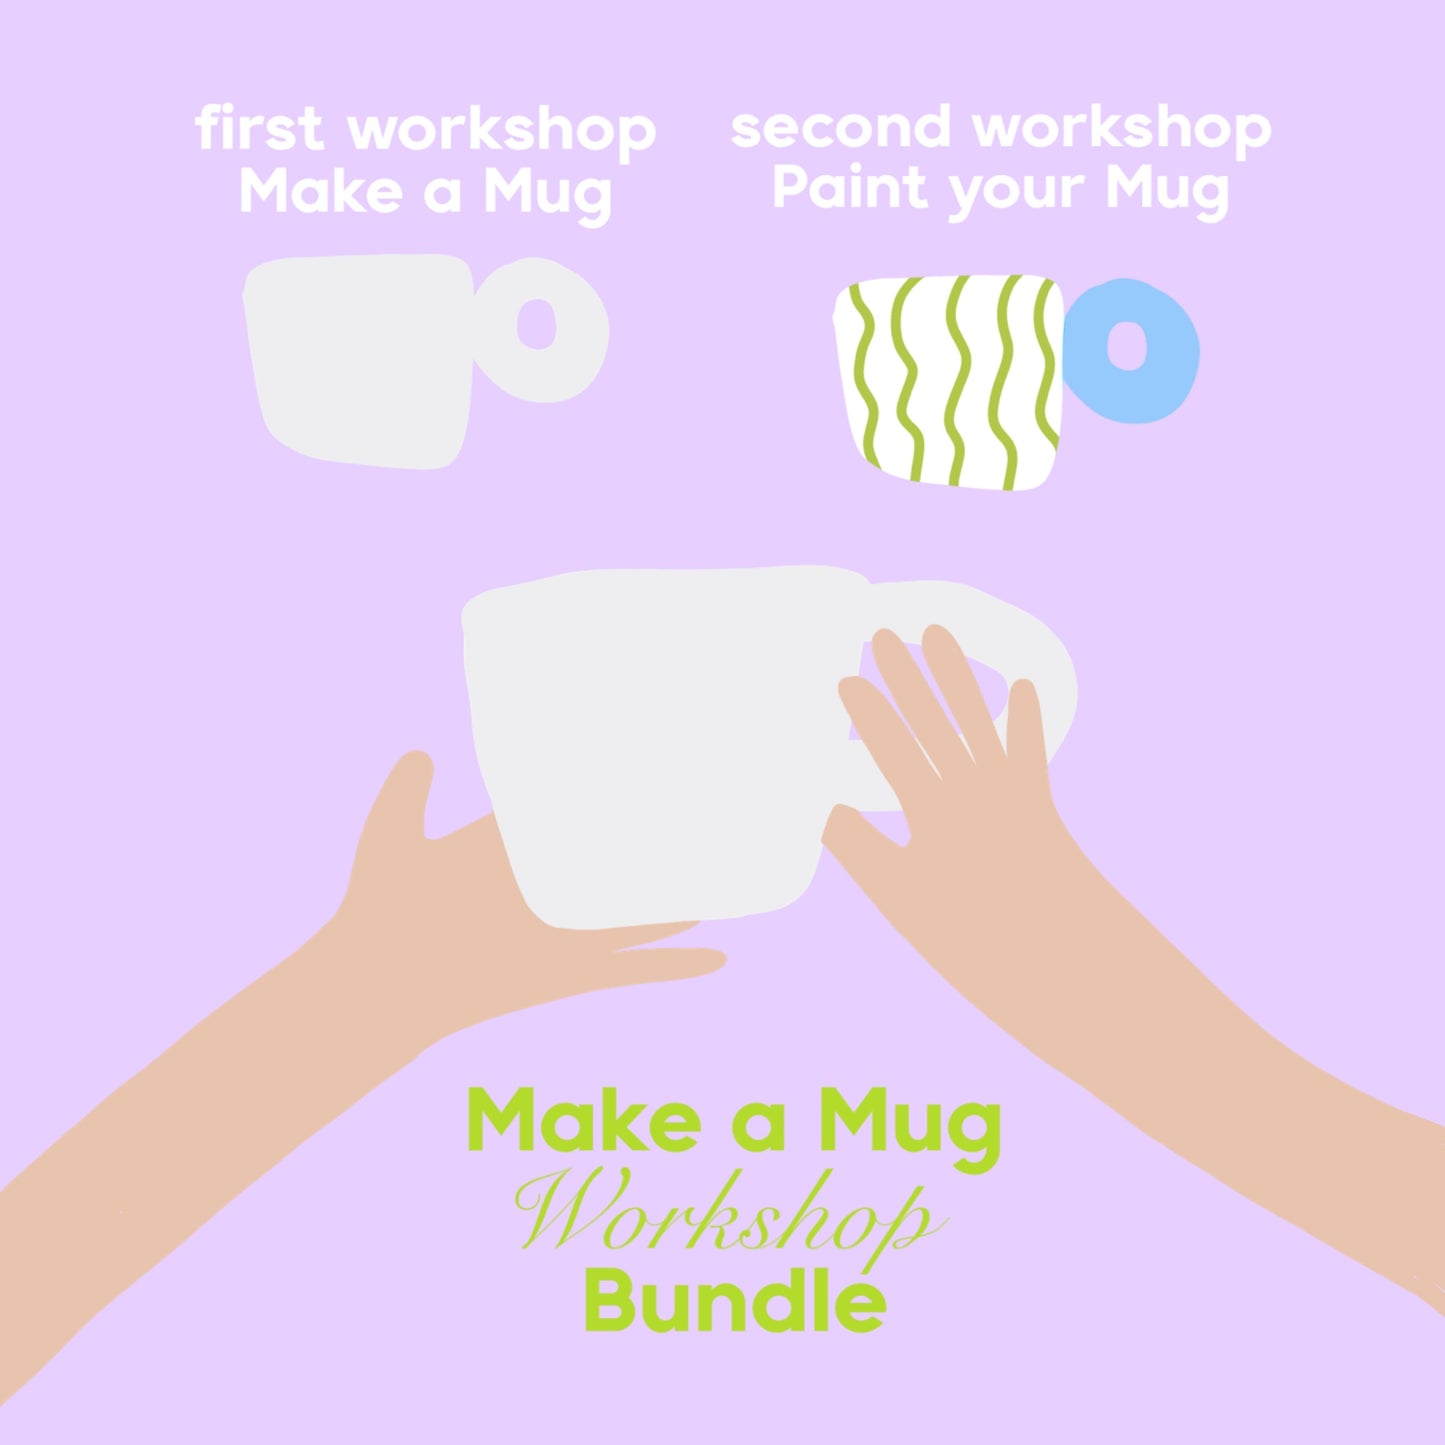 Make a Mug Workshop Bundle